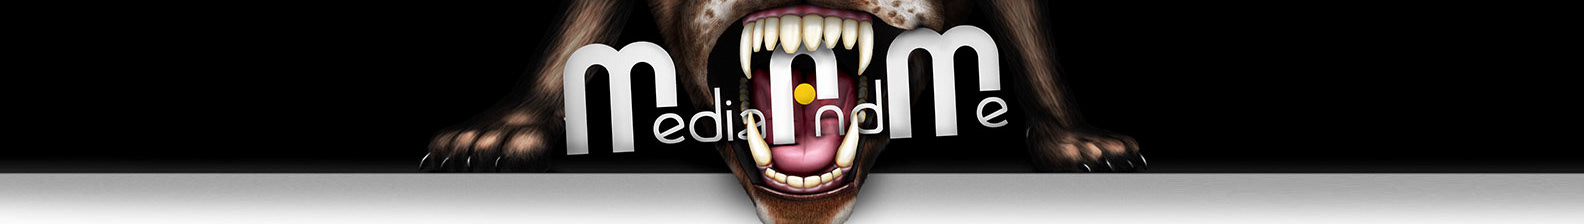 Cedric Allen's profile banner